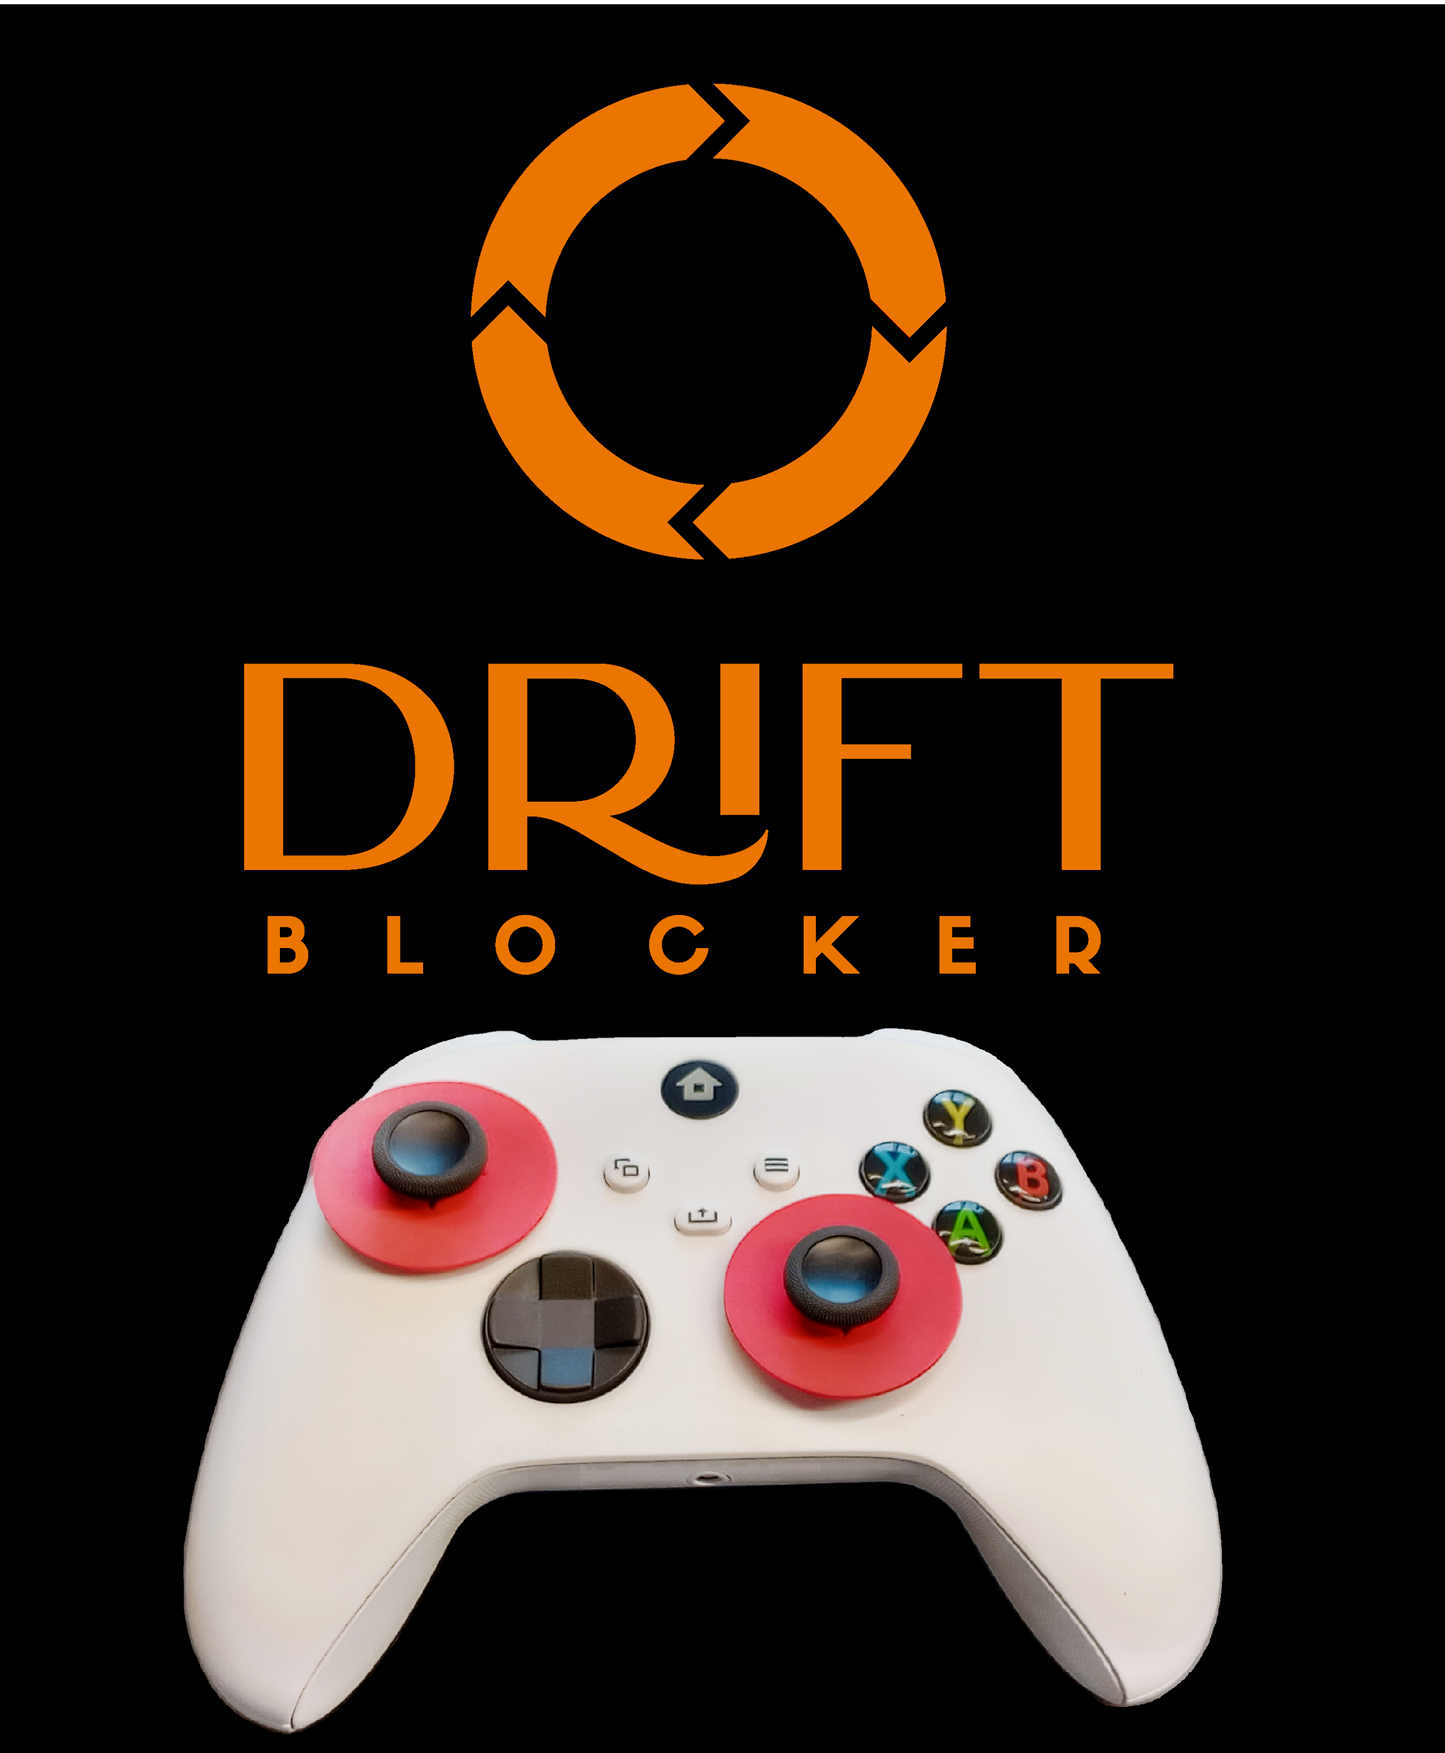 Drift Blocker - Xbox One \ X \ S Controller